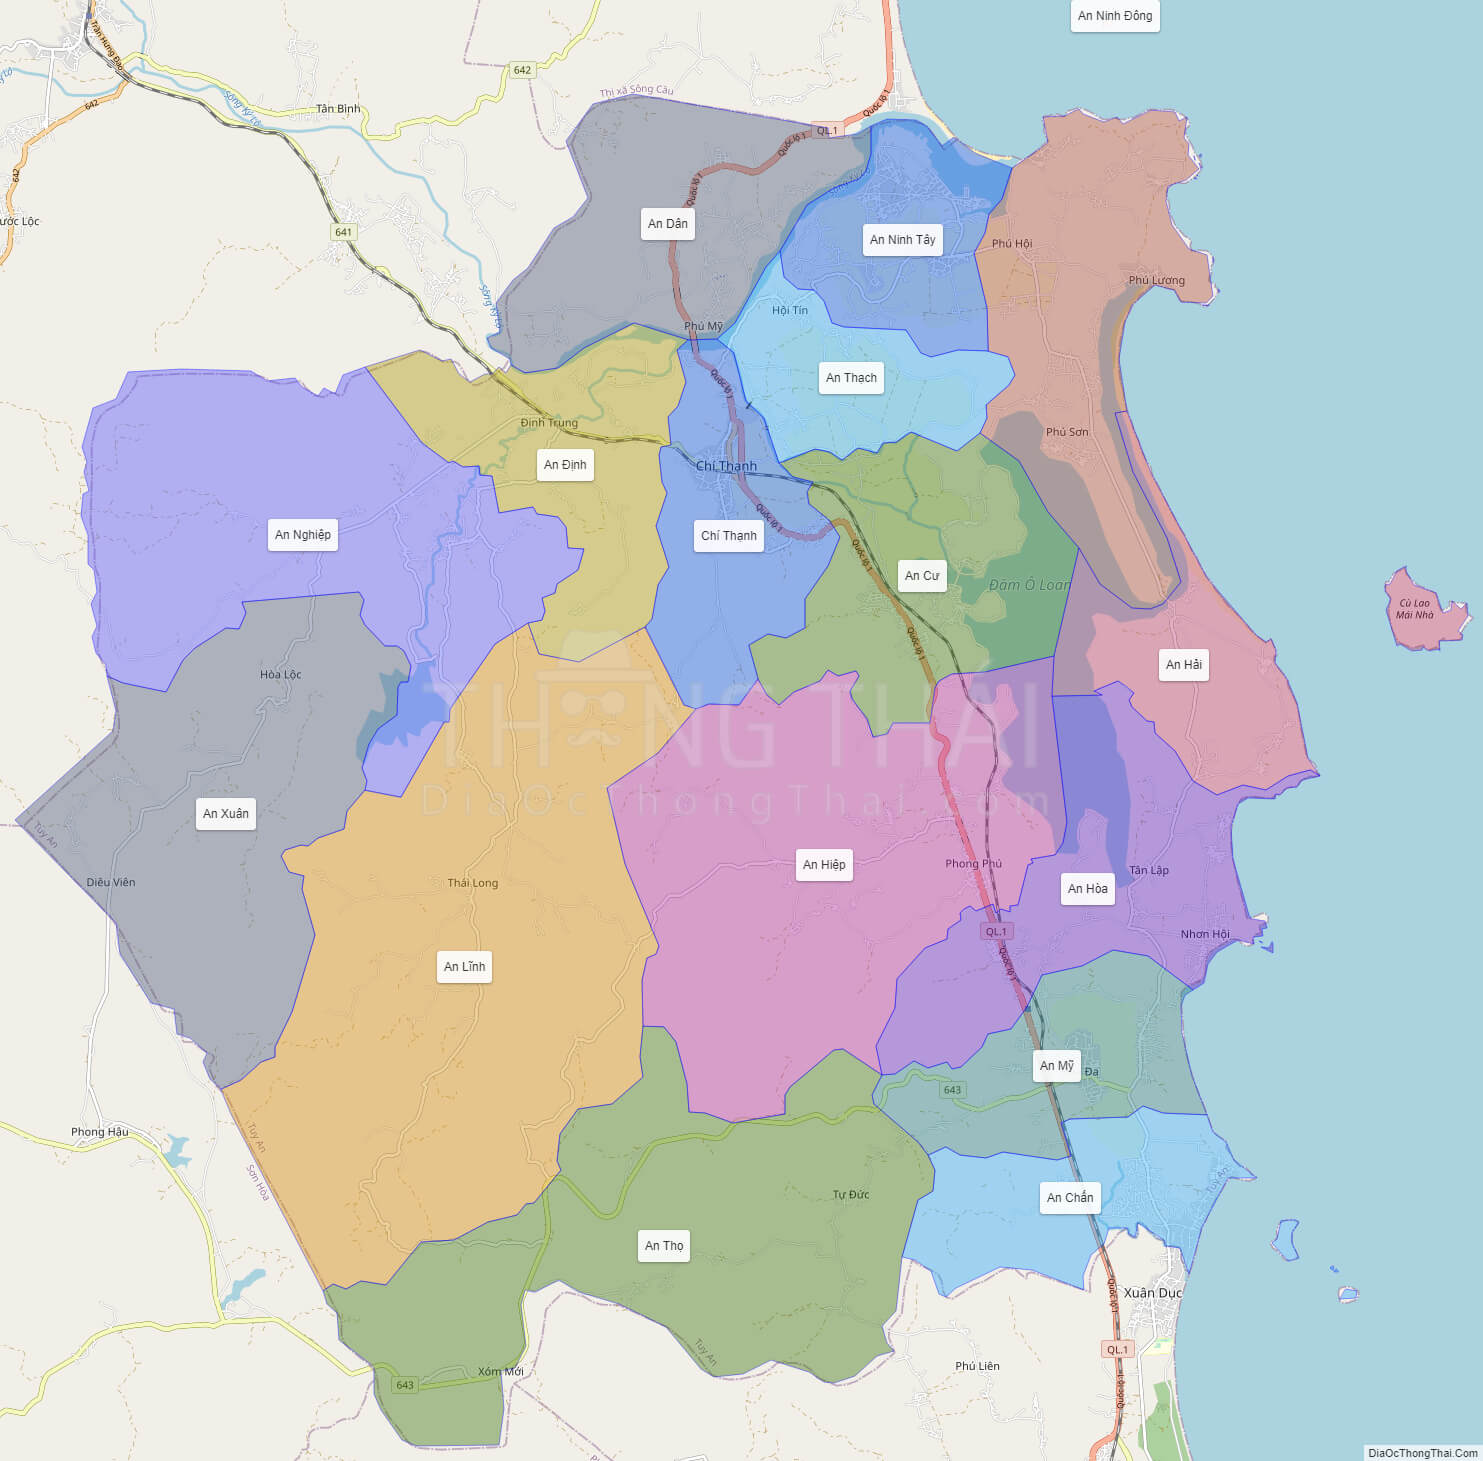 Tuy An, một huyện của tỉnh Phú Yên, là một nơi lý tưởng để định cư hoặc đầu tư bất động sản. Bản đồ BĐS mới cho thấy các khu vực quy hoạch, đất trống và mô tả chi tiết về từng khu vực. Hãy xem hình ảnh để khám phá những cơ hội đất đai tuyệt vời tại đây.